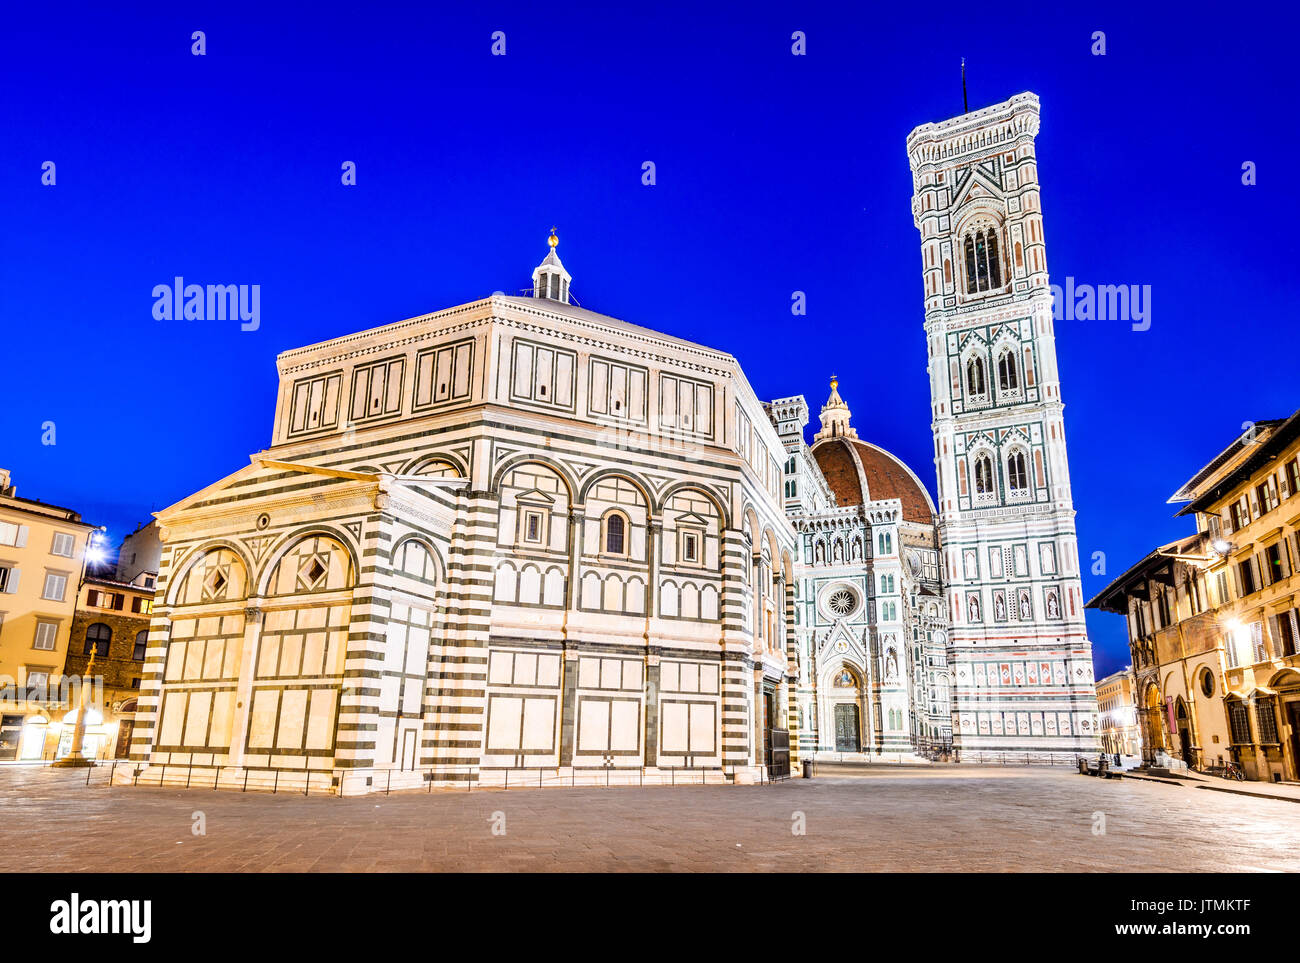 Firenze, Toscana - Paesaggio notturno con piazza del duomo e la catedrale di santa Maria del Fiore, architettura rinascimentale in Italia. Foto Stock